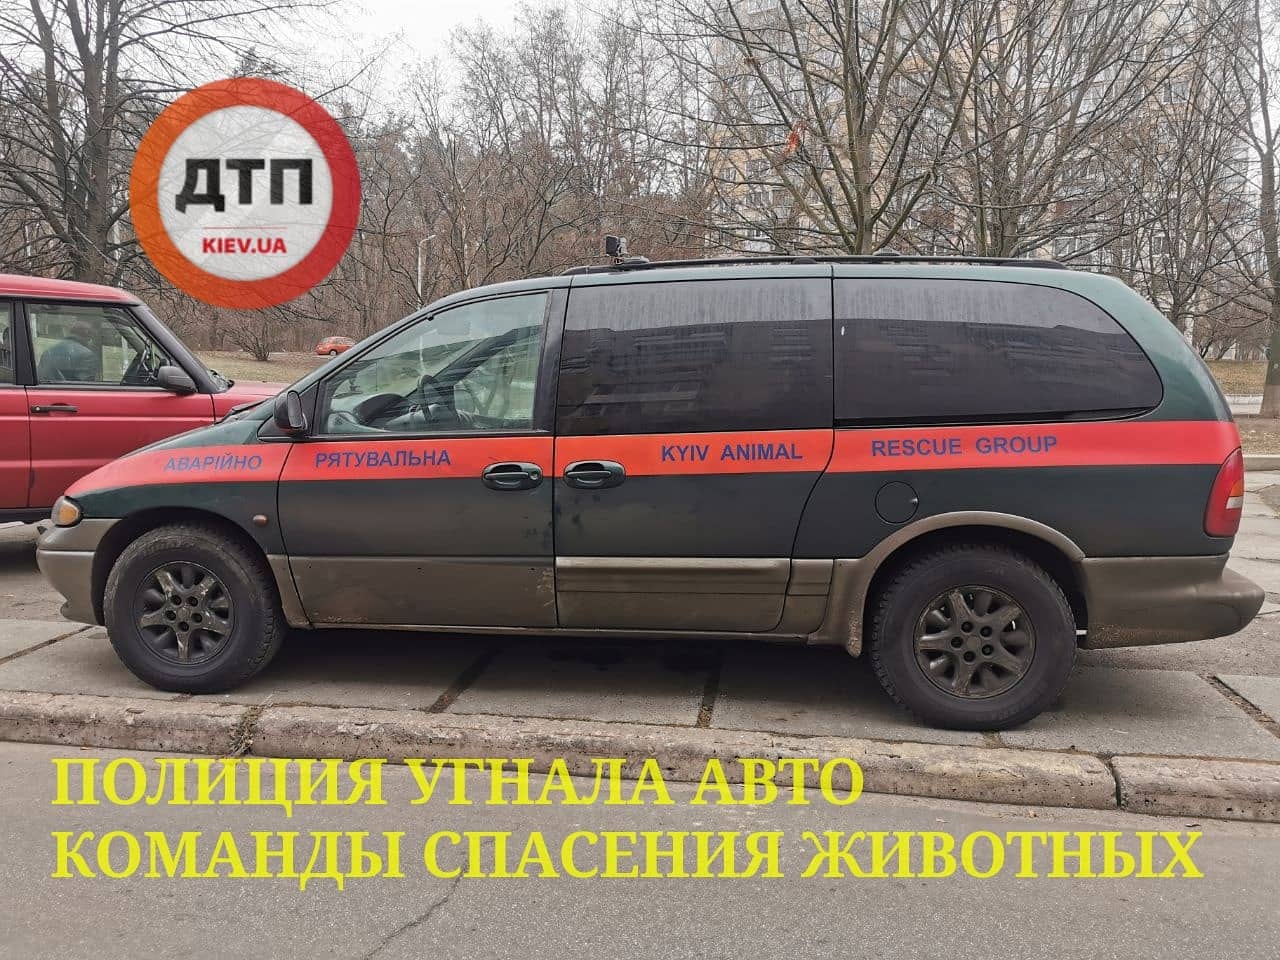 В Киеве полиция угнала авто команды спасения животных